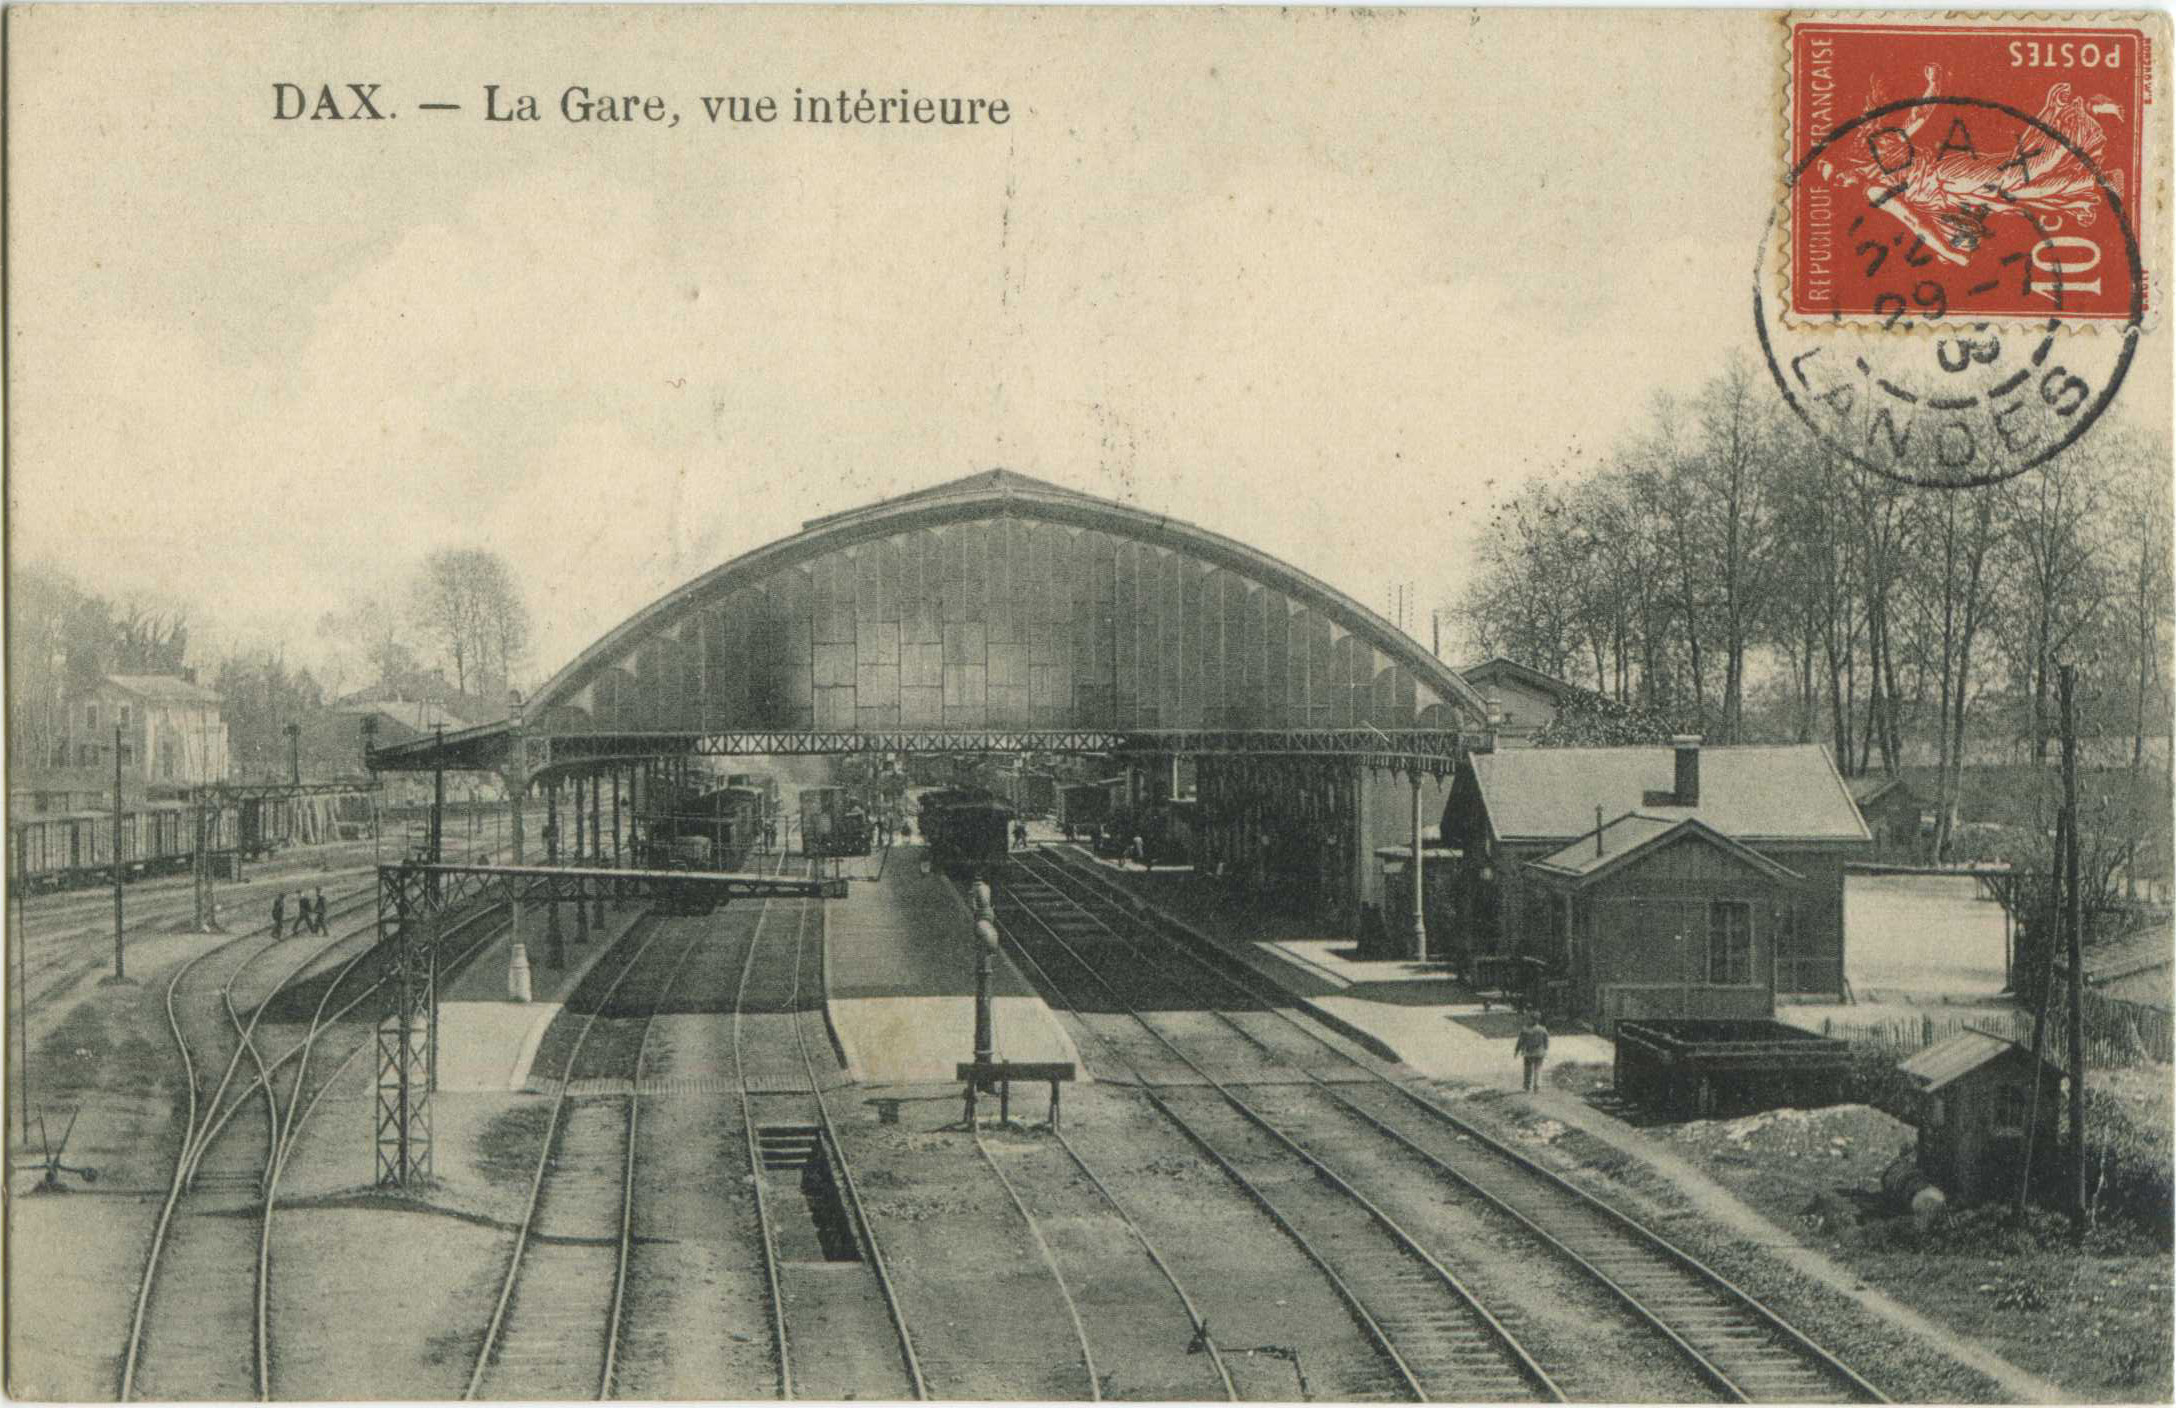 Dax - La Gare, vue intérieure